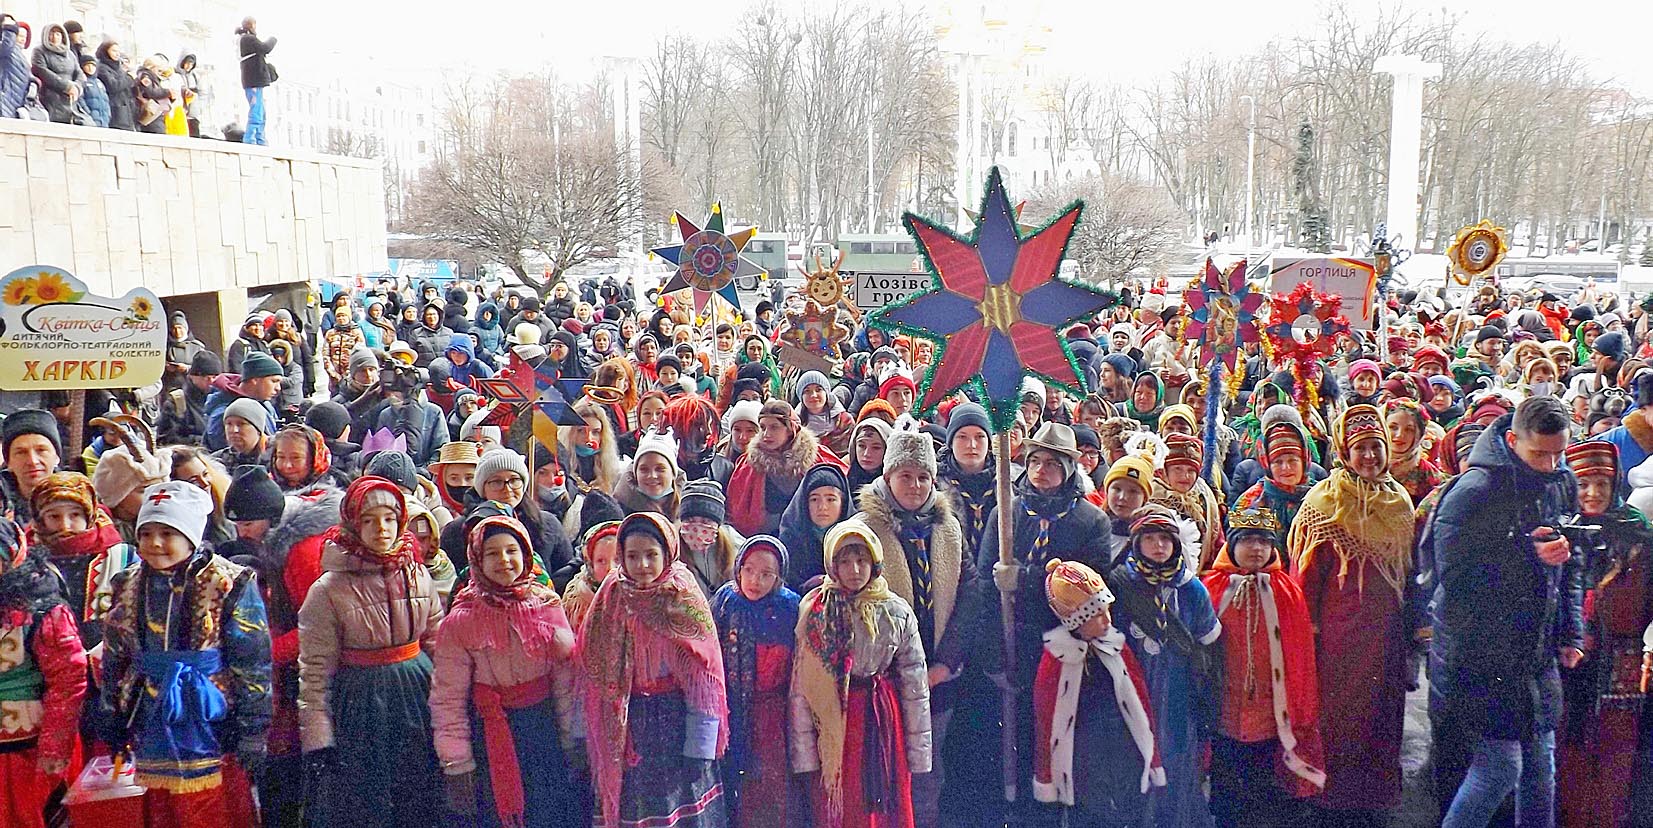 Майже дві тисячі учасників фестивалю вертепів у Харкові одночасно заспівали колядку «Нова радість стала». Фото автора